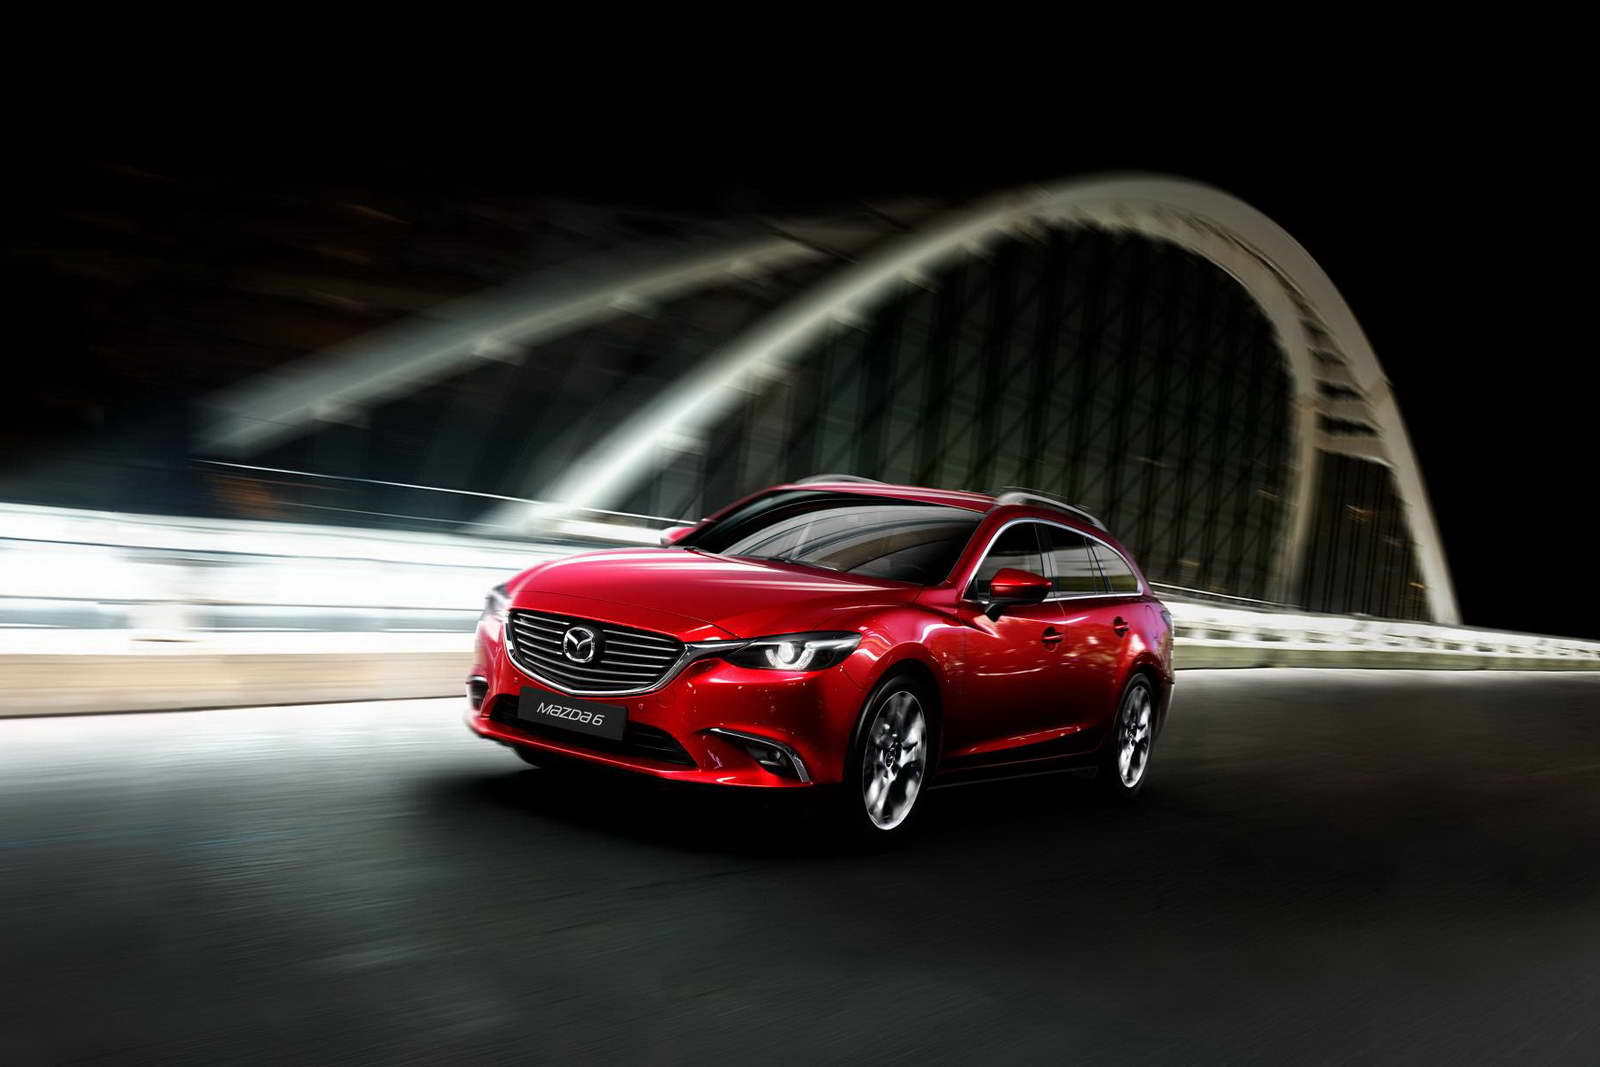 Phiên bản nâng cấp của Mazda 6 sẻ trình làng vào tháng 1.2015